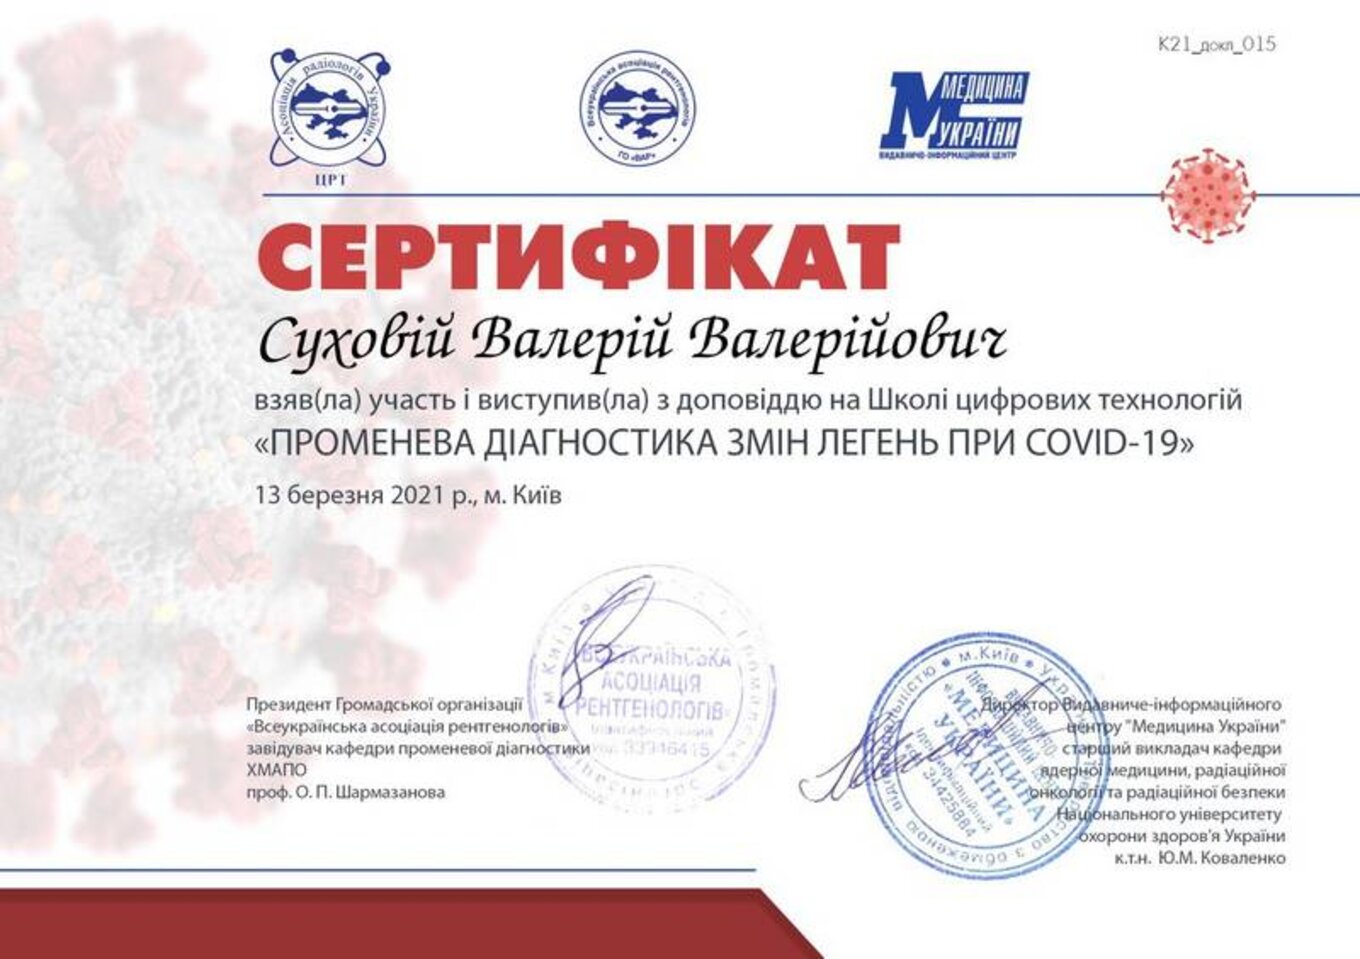 certificates/suhovej-valerij-valerijovich/erc-suhovej-certificates-10.jpg